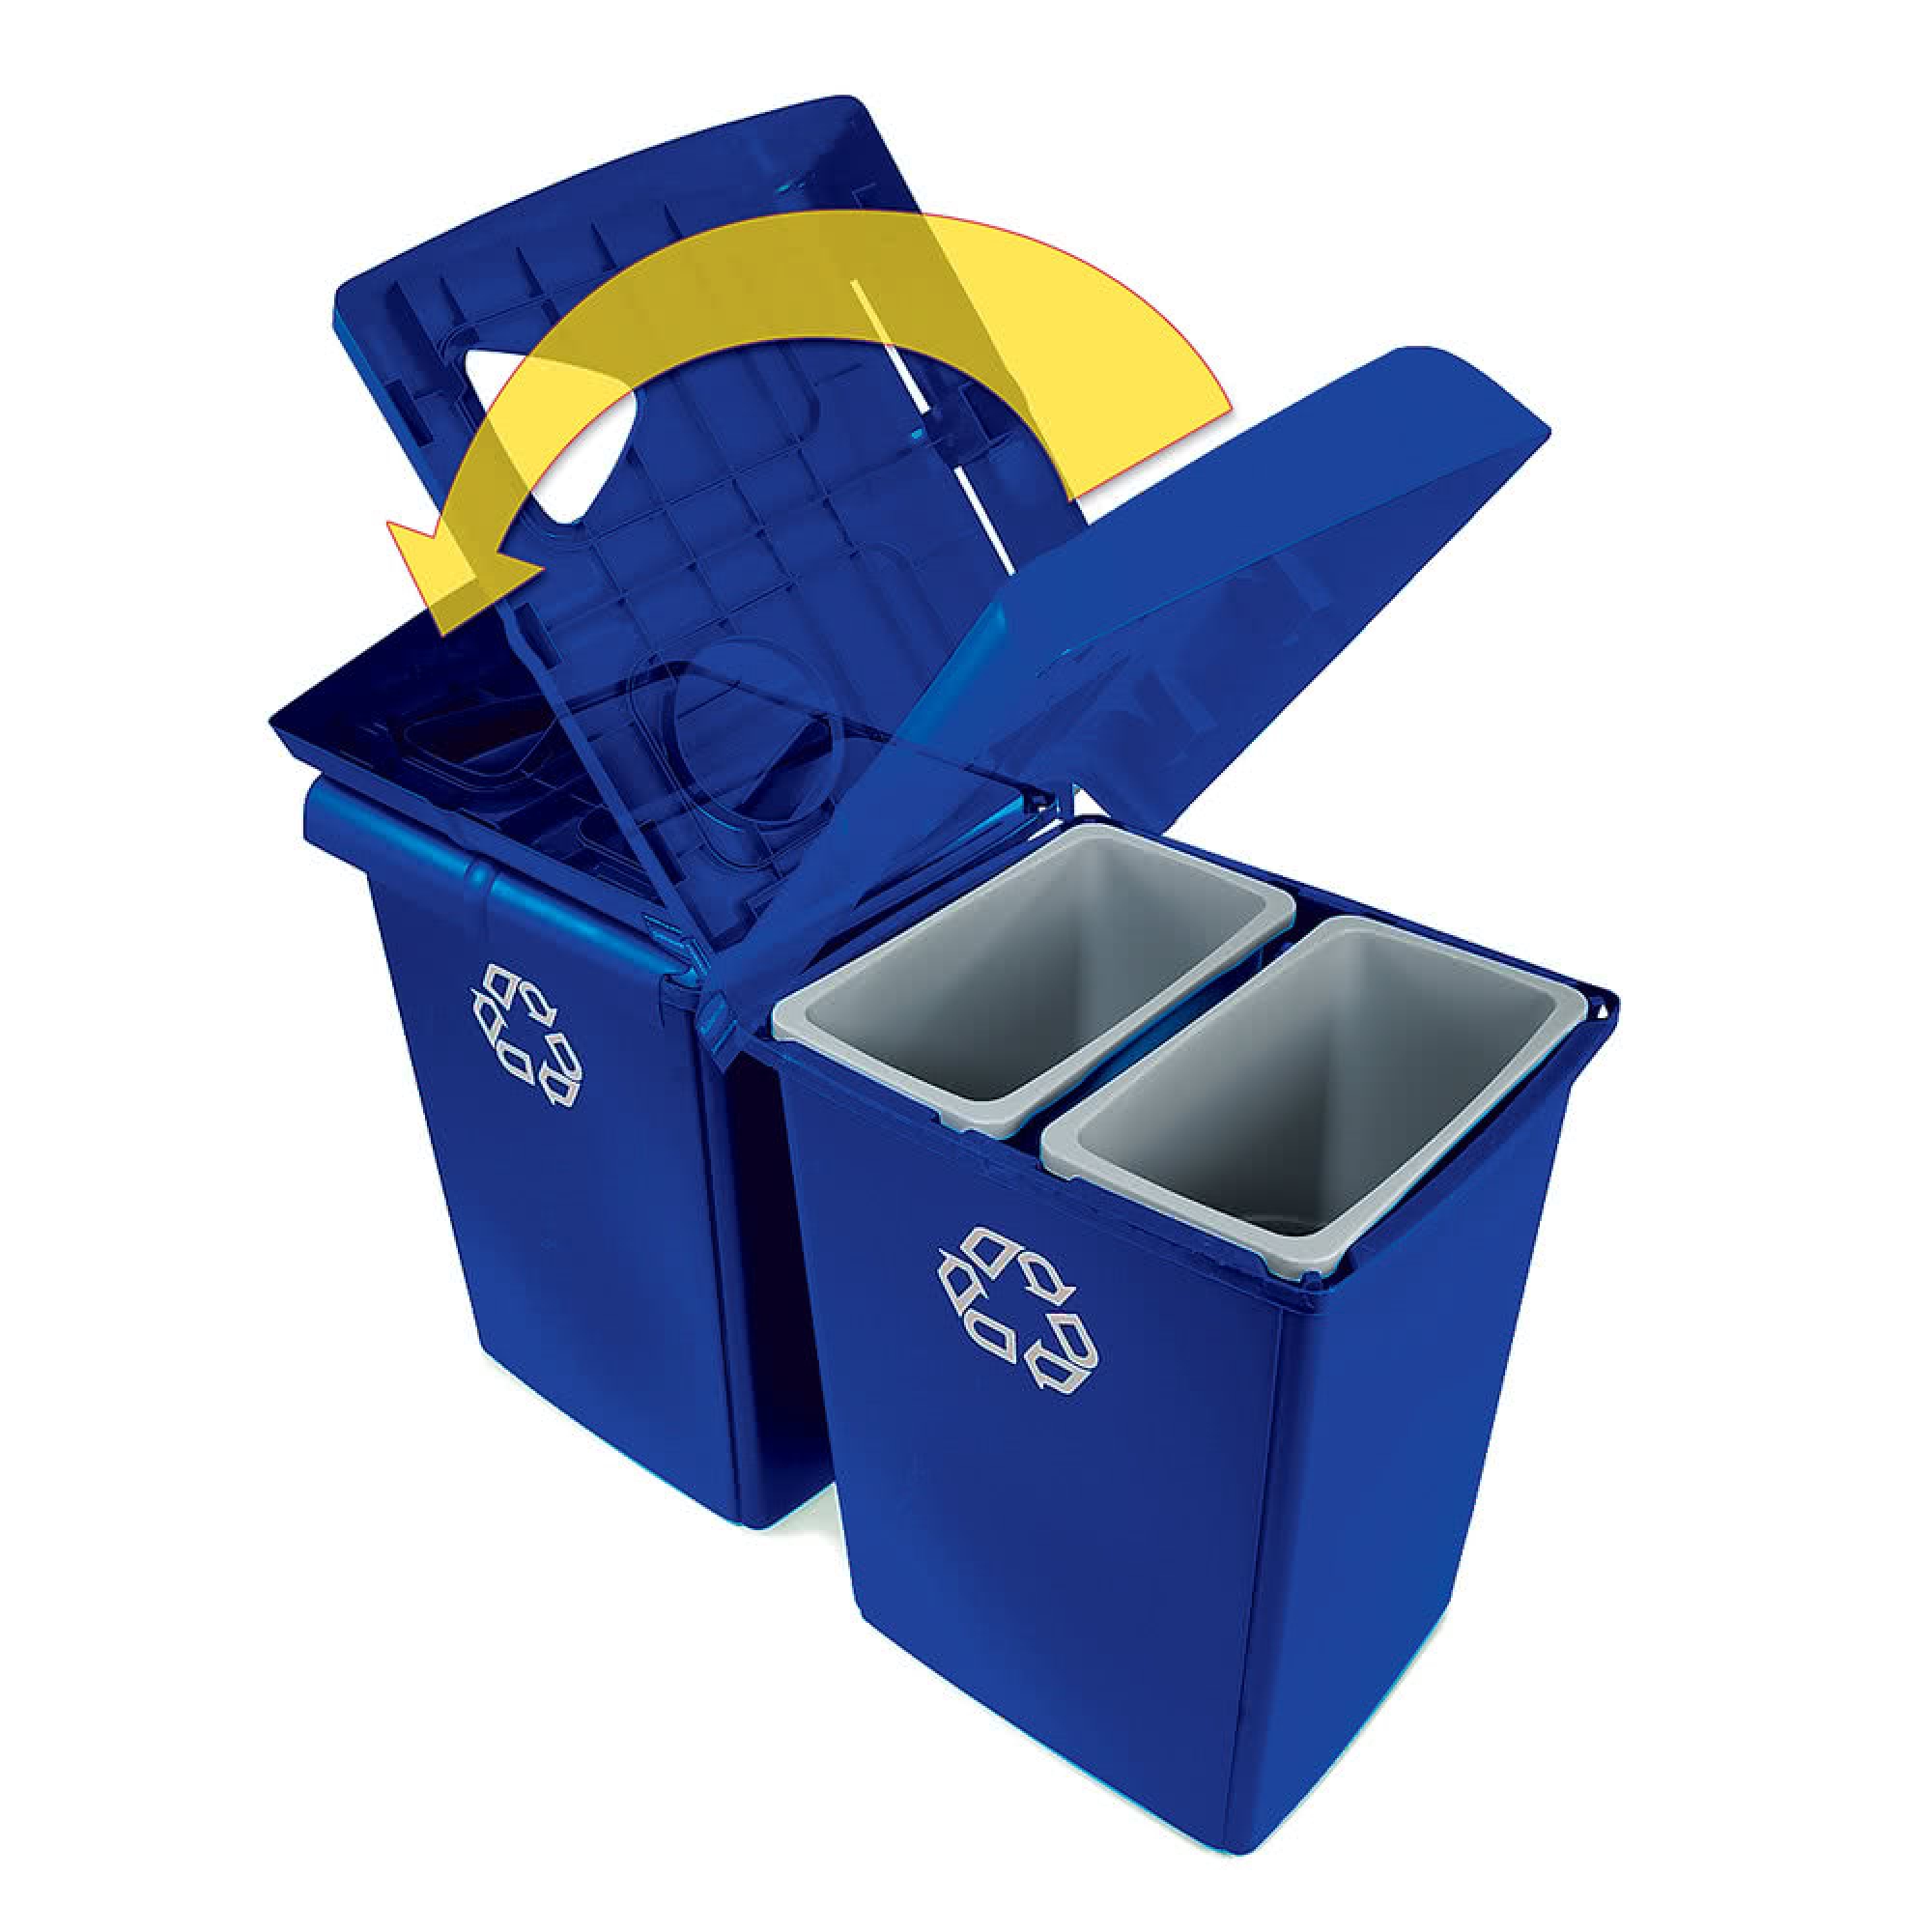 Rubbermaid 1792372 estación de reciclaje Glutton con 4 corrientes de desecho y capacidad para 92 galones, color azul